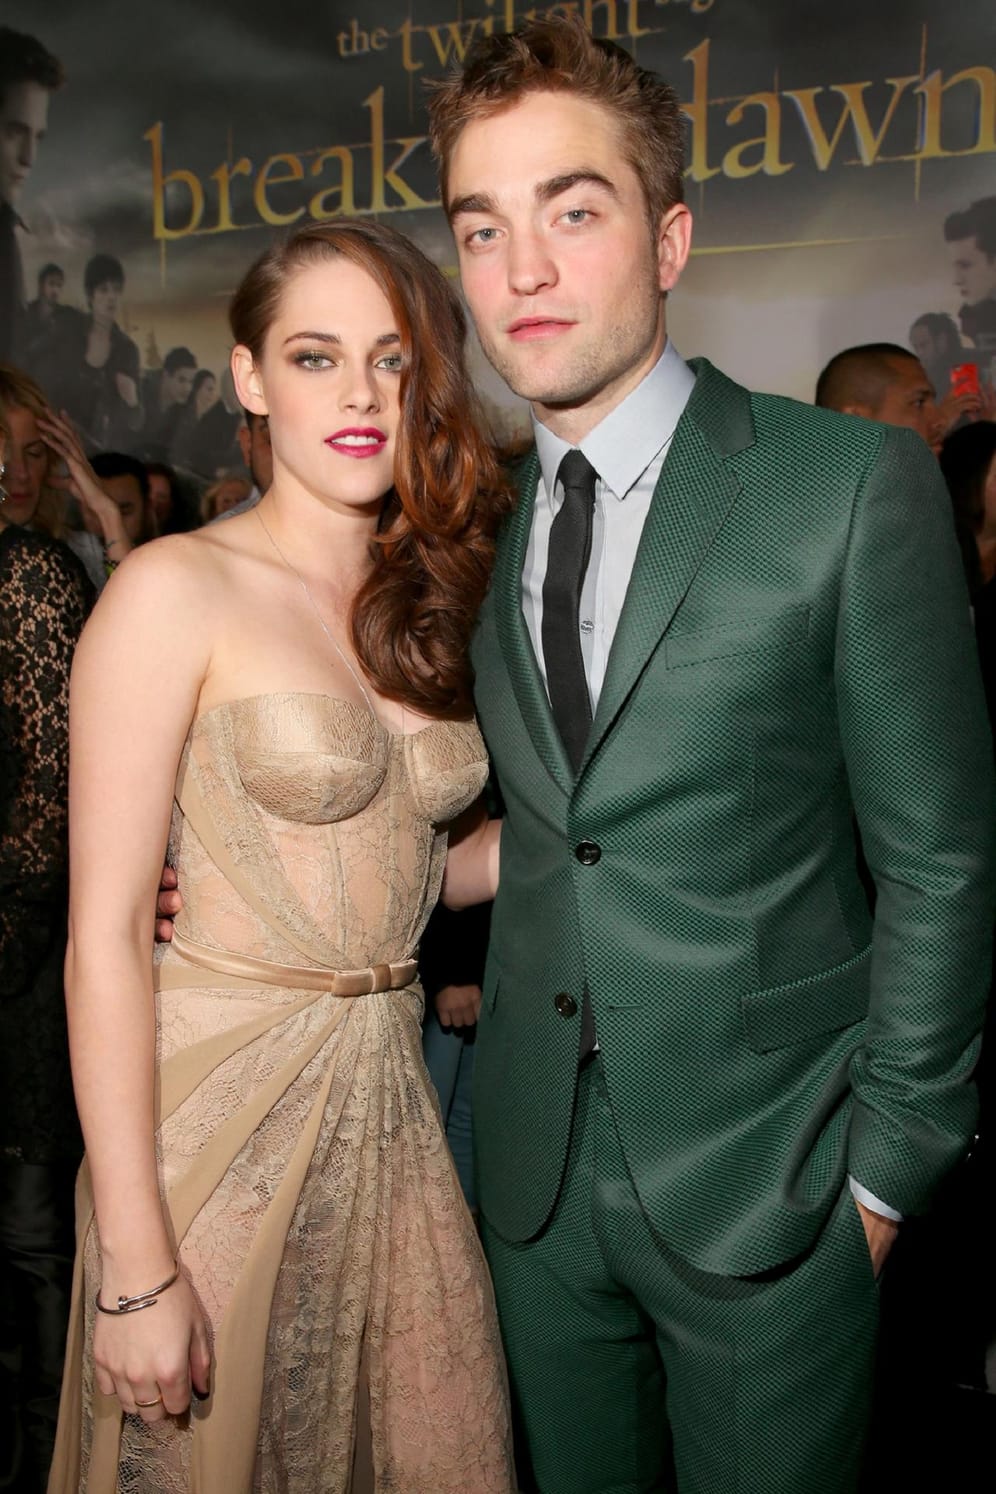 Robert Pattinson und Kristen Stewart: Sie waren das absolute Traumpaar der "Twilight"-Saga. 2008 kamen sie auch privat zusammen. Nach einem Seitensprung von Kristen Stewart folgte 2012 die Trennung.